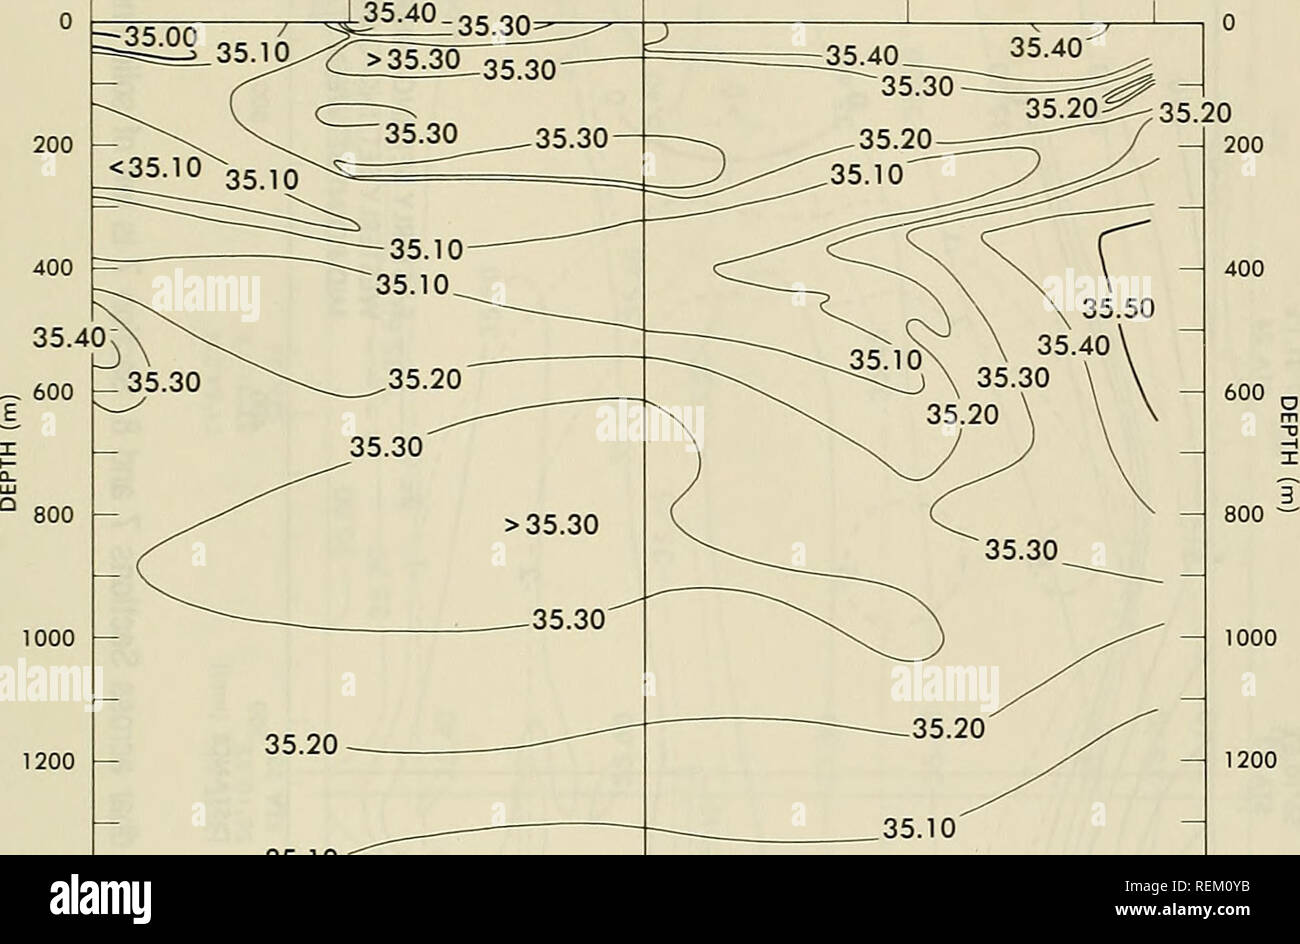 . La circulation et les propriétés océanographiques dans le bassin somalien comme pendant la mousson du sud-ouest 1979. Courants océaniques ; océanographie ; les moussons. 08°52'N 09°42.4N 11°14,8'N ICia.S'N 09°21'N 50°68'E 52°03.4-E 52°31,7 53°29,7'E'E 54°33,0'E STA STA STA 19 17 18 20 21 STA STA .35,40.. 35,10 35,10 35,00 200- DISTANCE (NMI) Figure 43. Des salinités ("/oo) le long de l'article 5 et 6. L'article 5 est à gauche de la ligne solide à la station 19. L'USNS WILKES, 26 - 28 août 1979 67. Veuillez noter que ces images sont extraites de la page numérisée des images qui peuvent avoir été retouchées numériquement pour plus de lisibilité - colo Banque D'Images